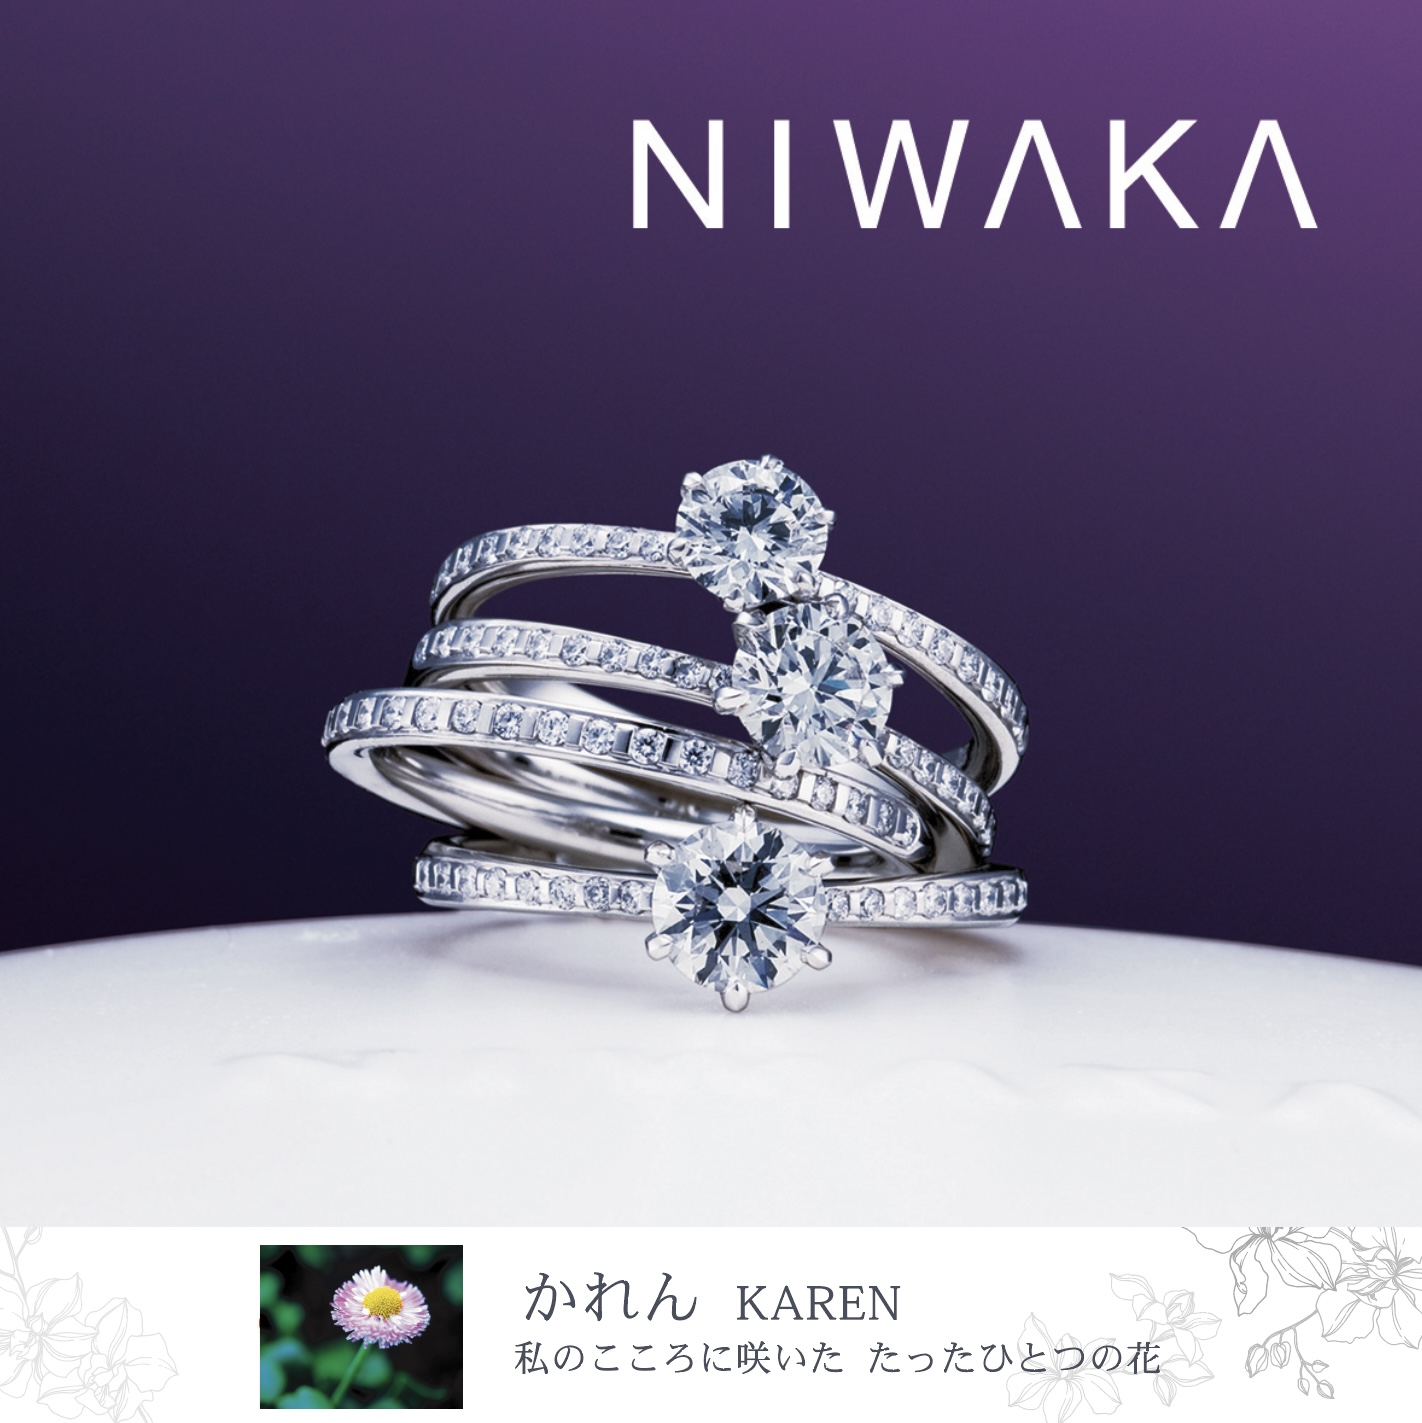 俄 NIWAKA | 結婚指輪 ・婚約指輪 | 正規販売店 山城時計店ブライダル